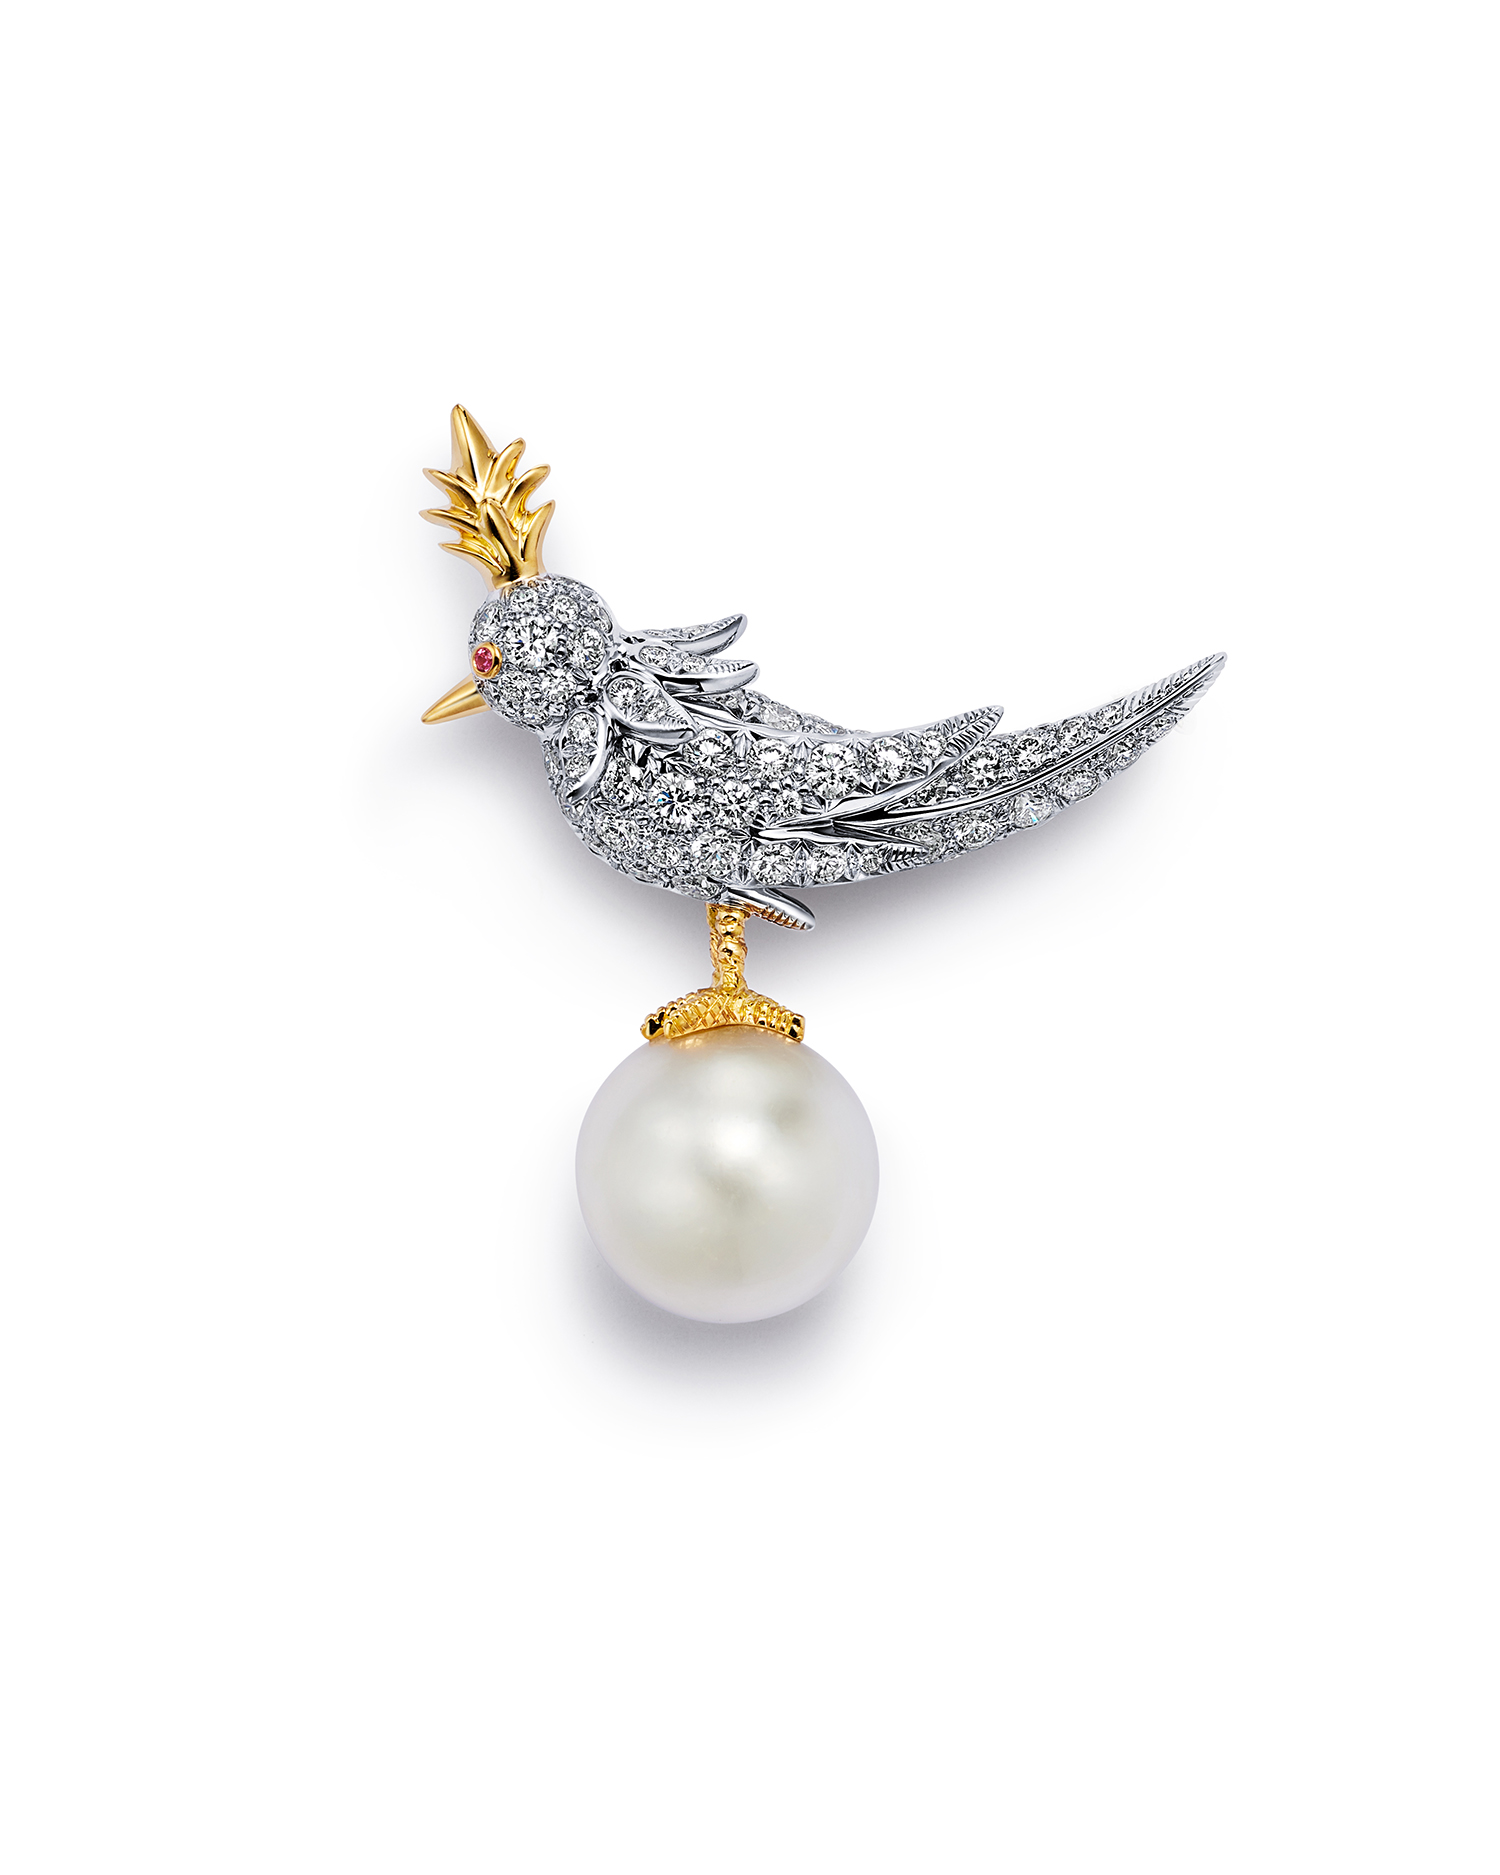 Tiffany & Co. reinterpreta o icônico broche “Bird on a Rock”, criado por Jean Schlumberger, com as pérolas naturais mais raras do mundo, lançando uma coleção cápsula de alta joalheria em Doha